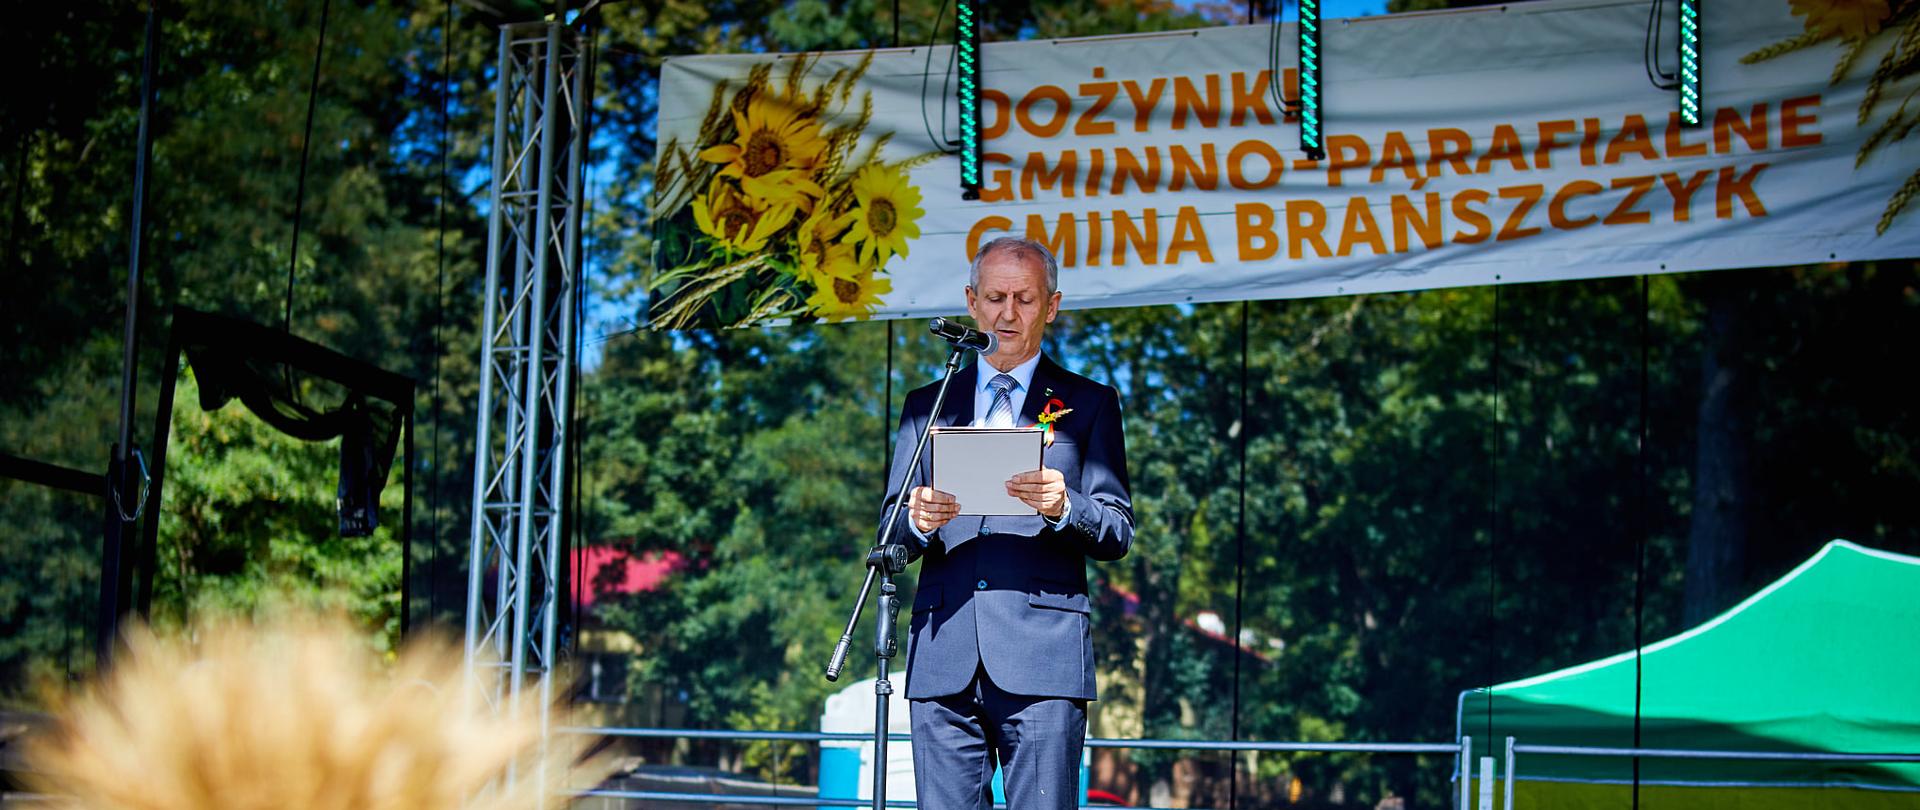 Na zdjęciu Wójt Wiesław Przybylski wygłaszający przemówienie na scenie.